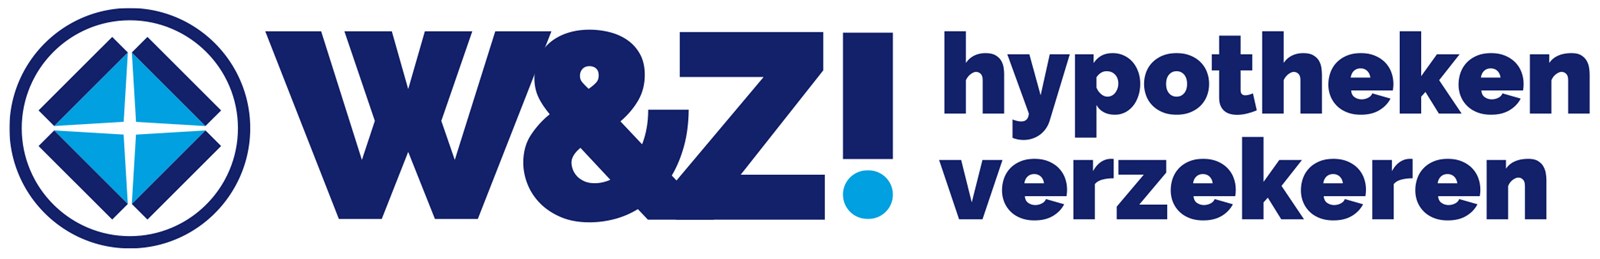 Logo van W&Z! hypotheken verzekeren